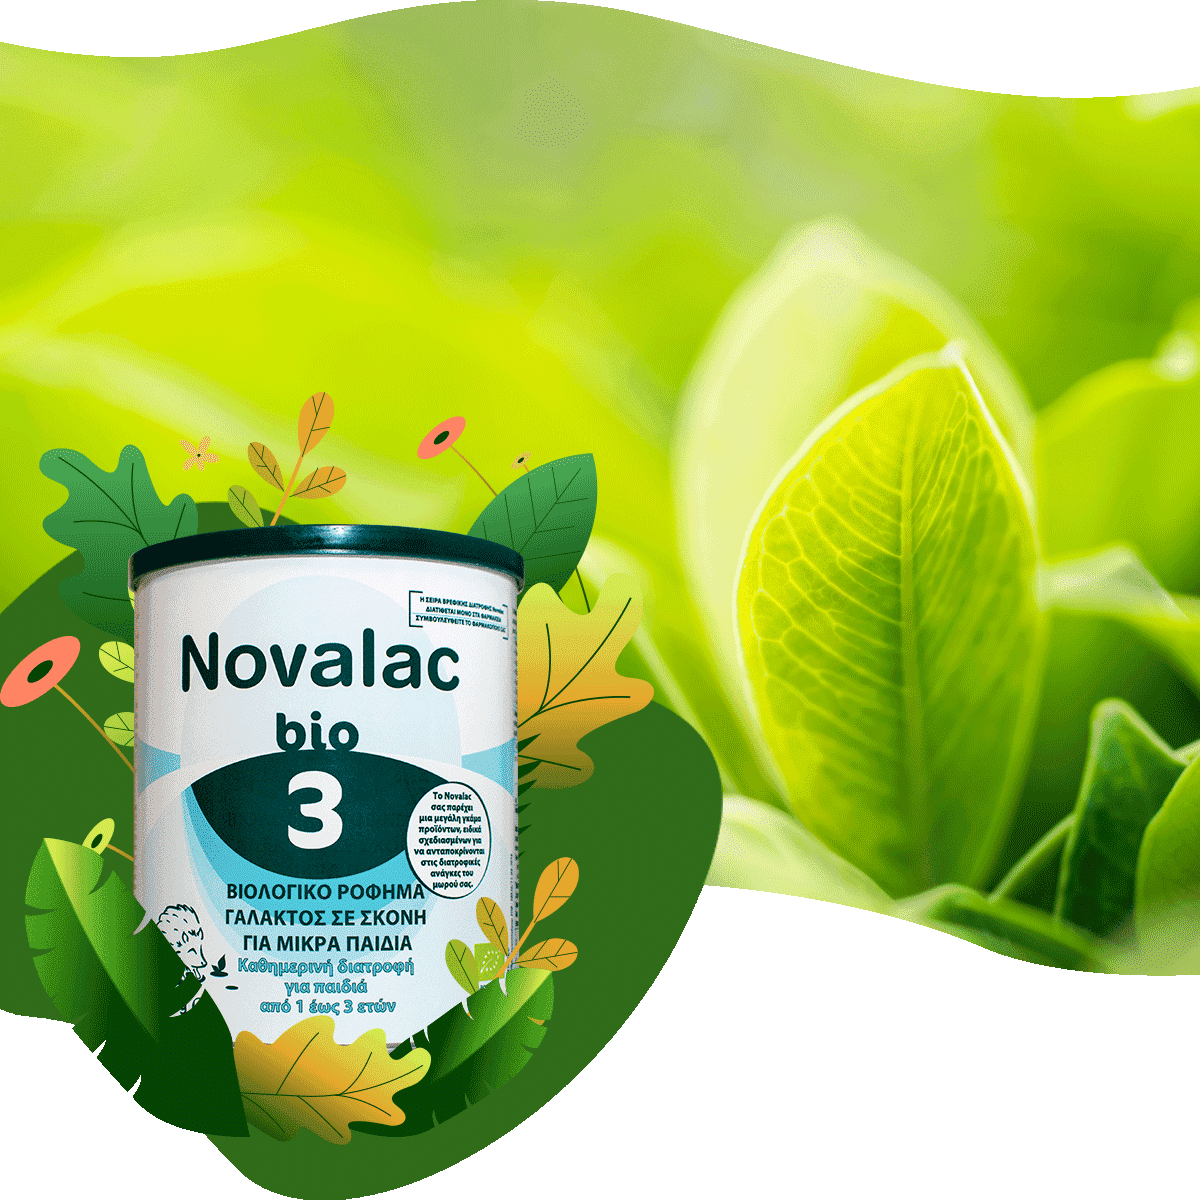 Γιατί να επιλέξω Novalac bio 